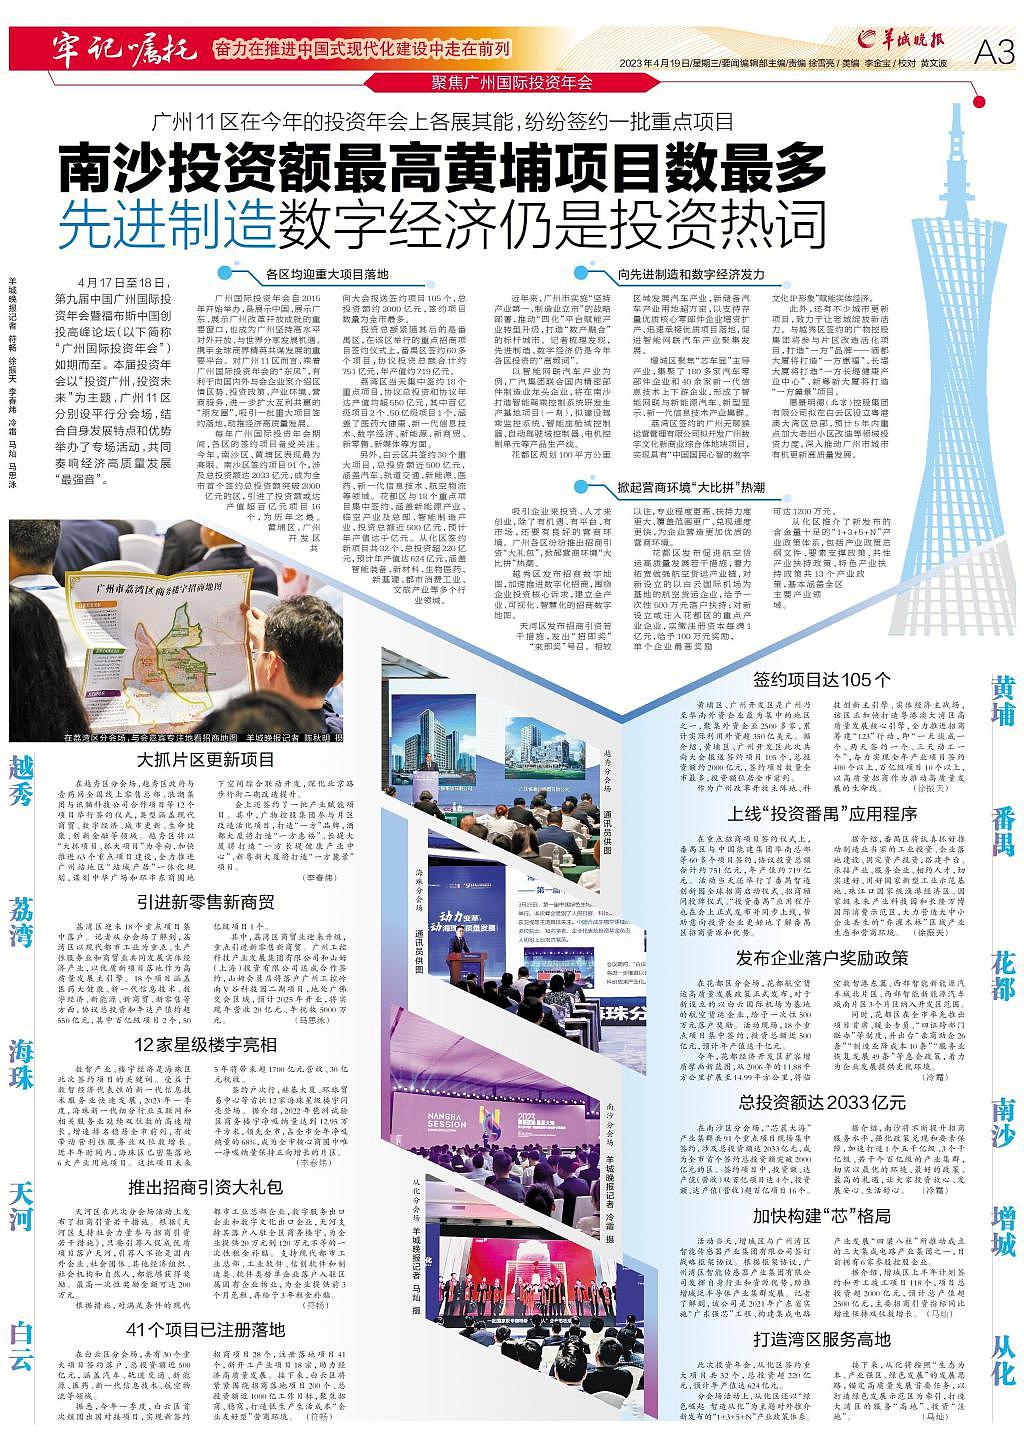 聚焦 2023 年广州国际投资年会 - 6